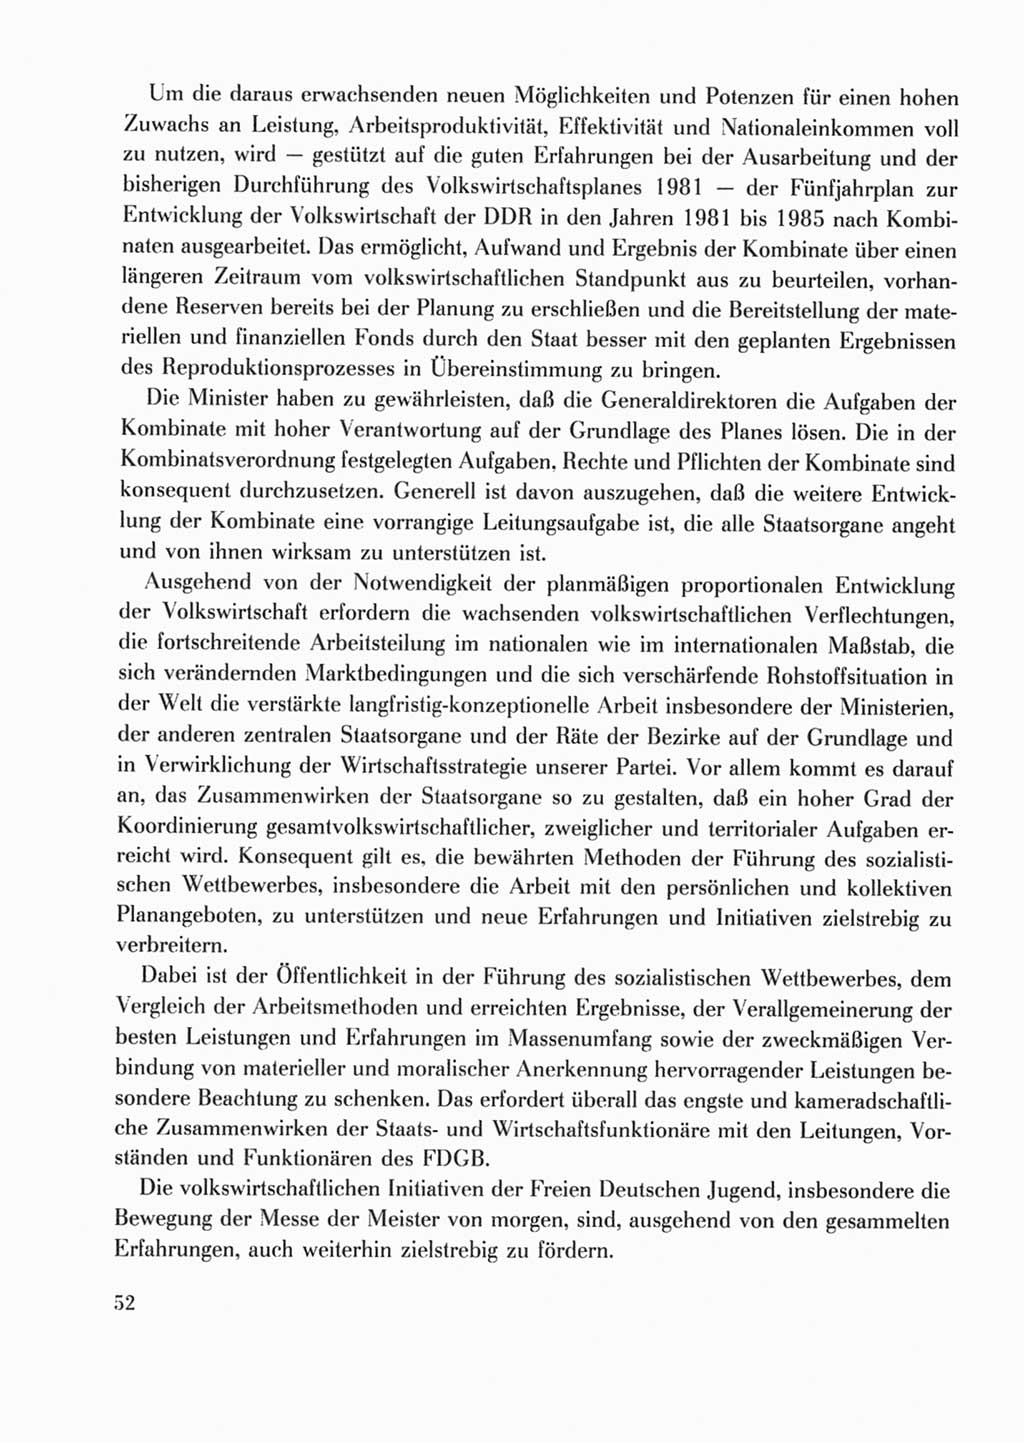 Protokoll der Verhandlungen des Ⅹ. Parteitages der Sozialistischen Einheitspartei Deutschlands (SED) [Deutsche Demokratische Republik (DDR)] 1981, Band 2, Seite 52 (Prot. Verh. Ⅹ. PT SED DDR 1981, Bd. 2, S. 52)